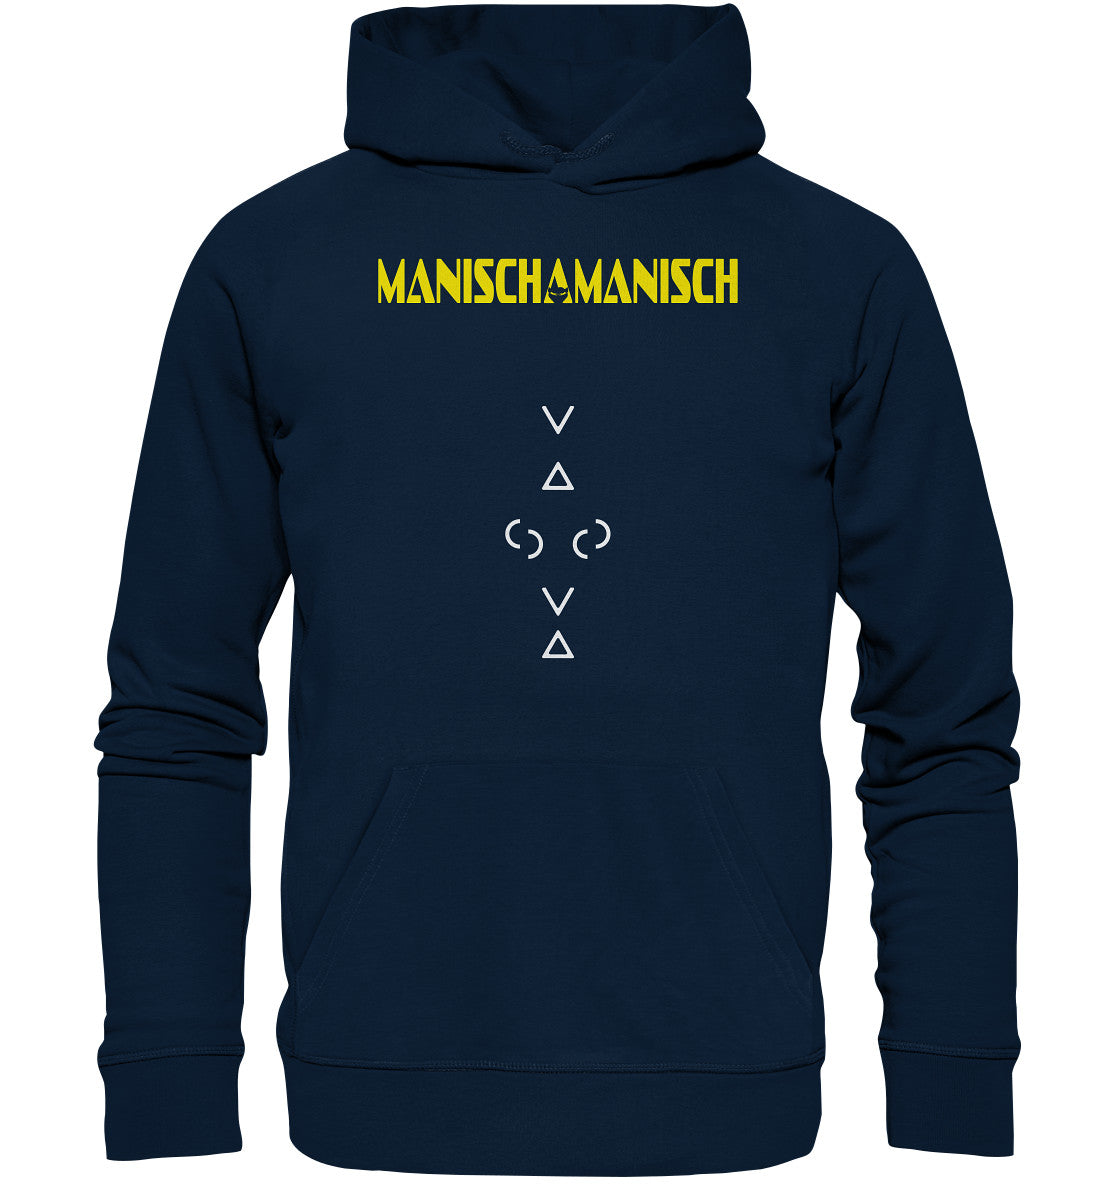 MANISCHAMANISCH - Organic Basic Hoodie